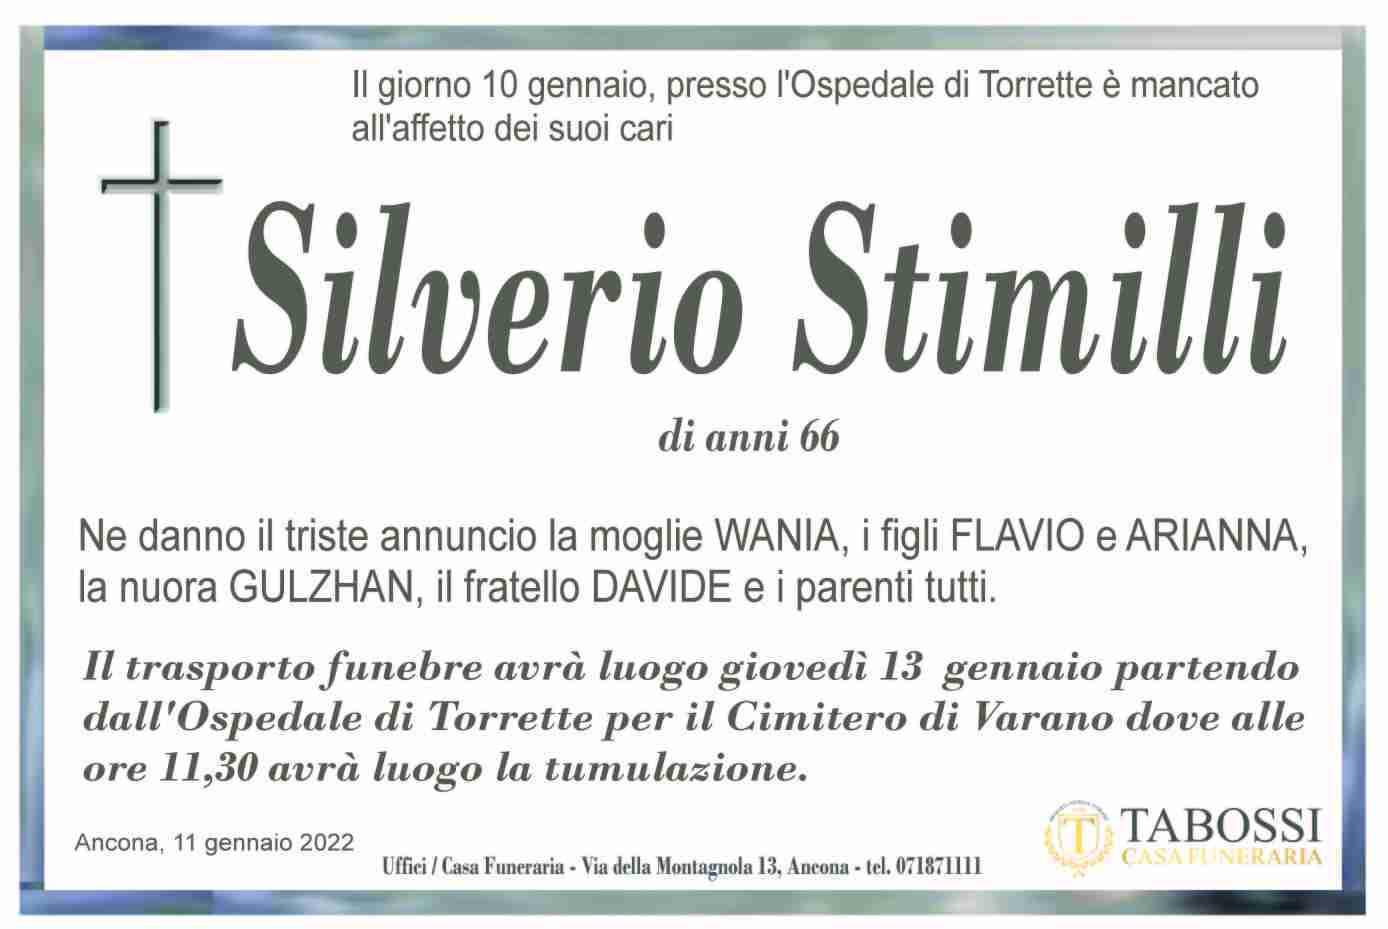 Silverio Stimilli